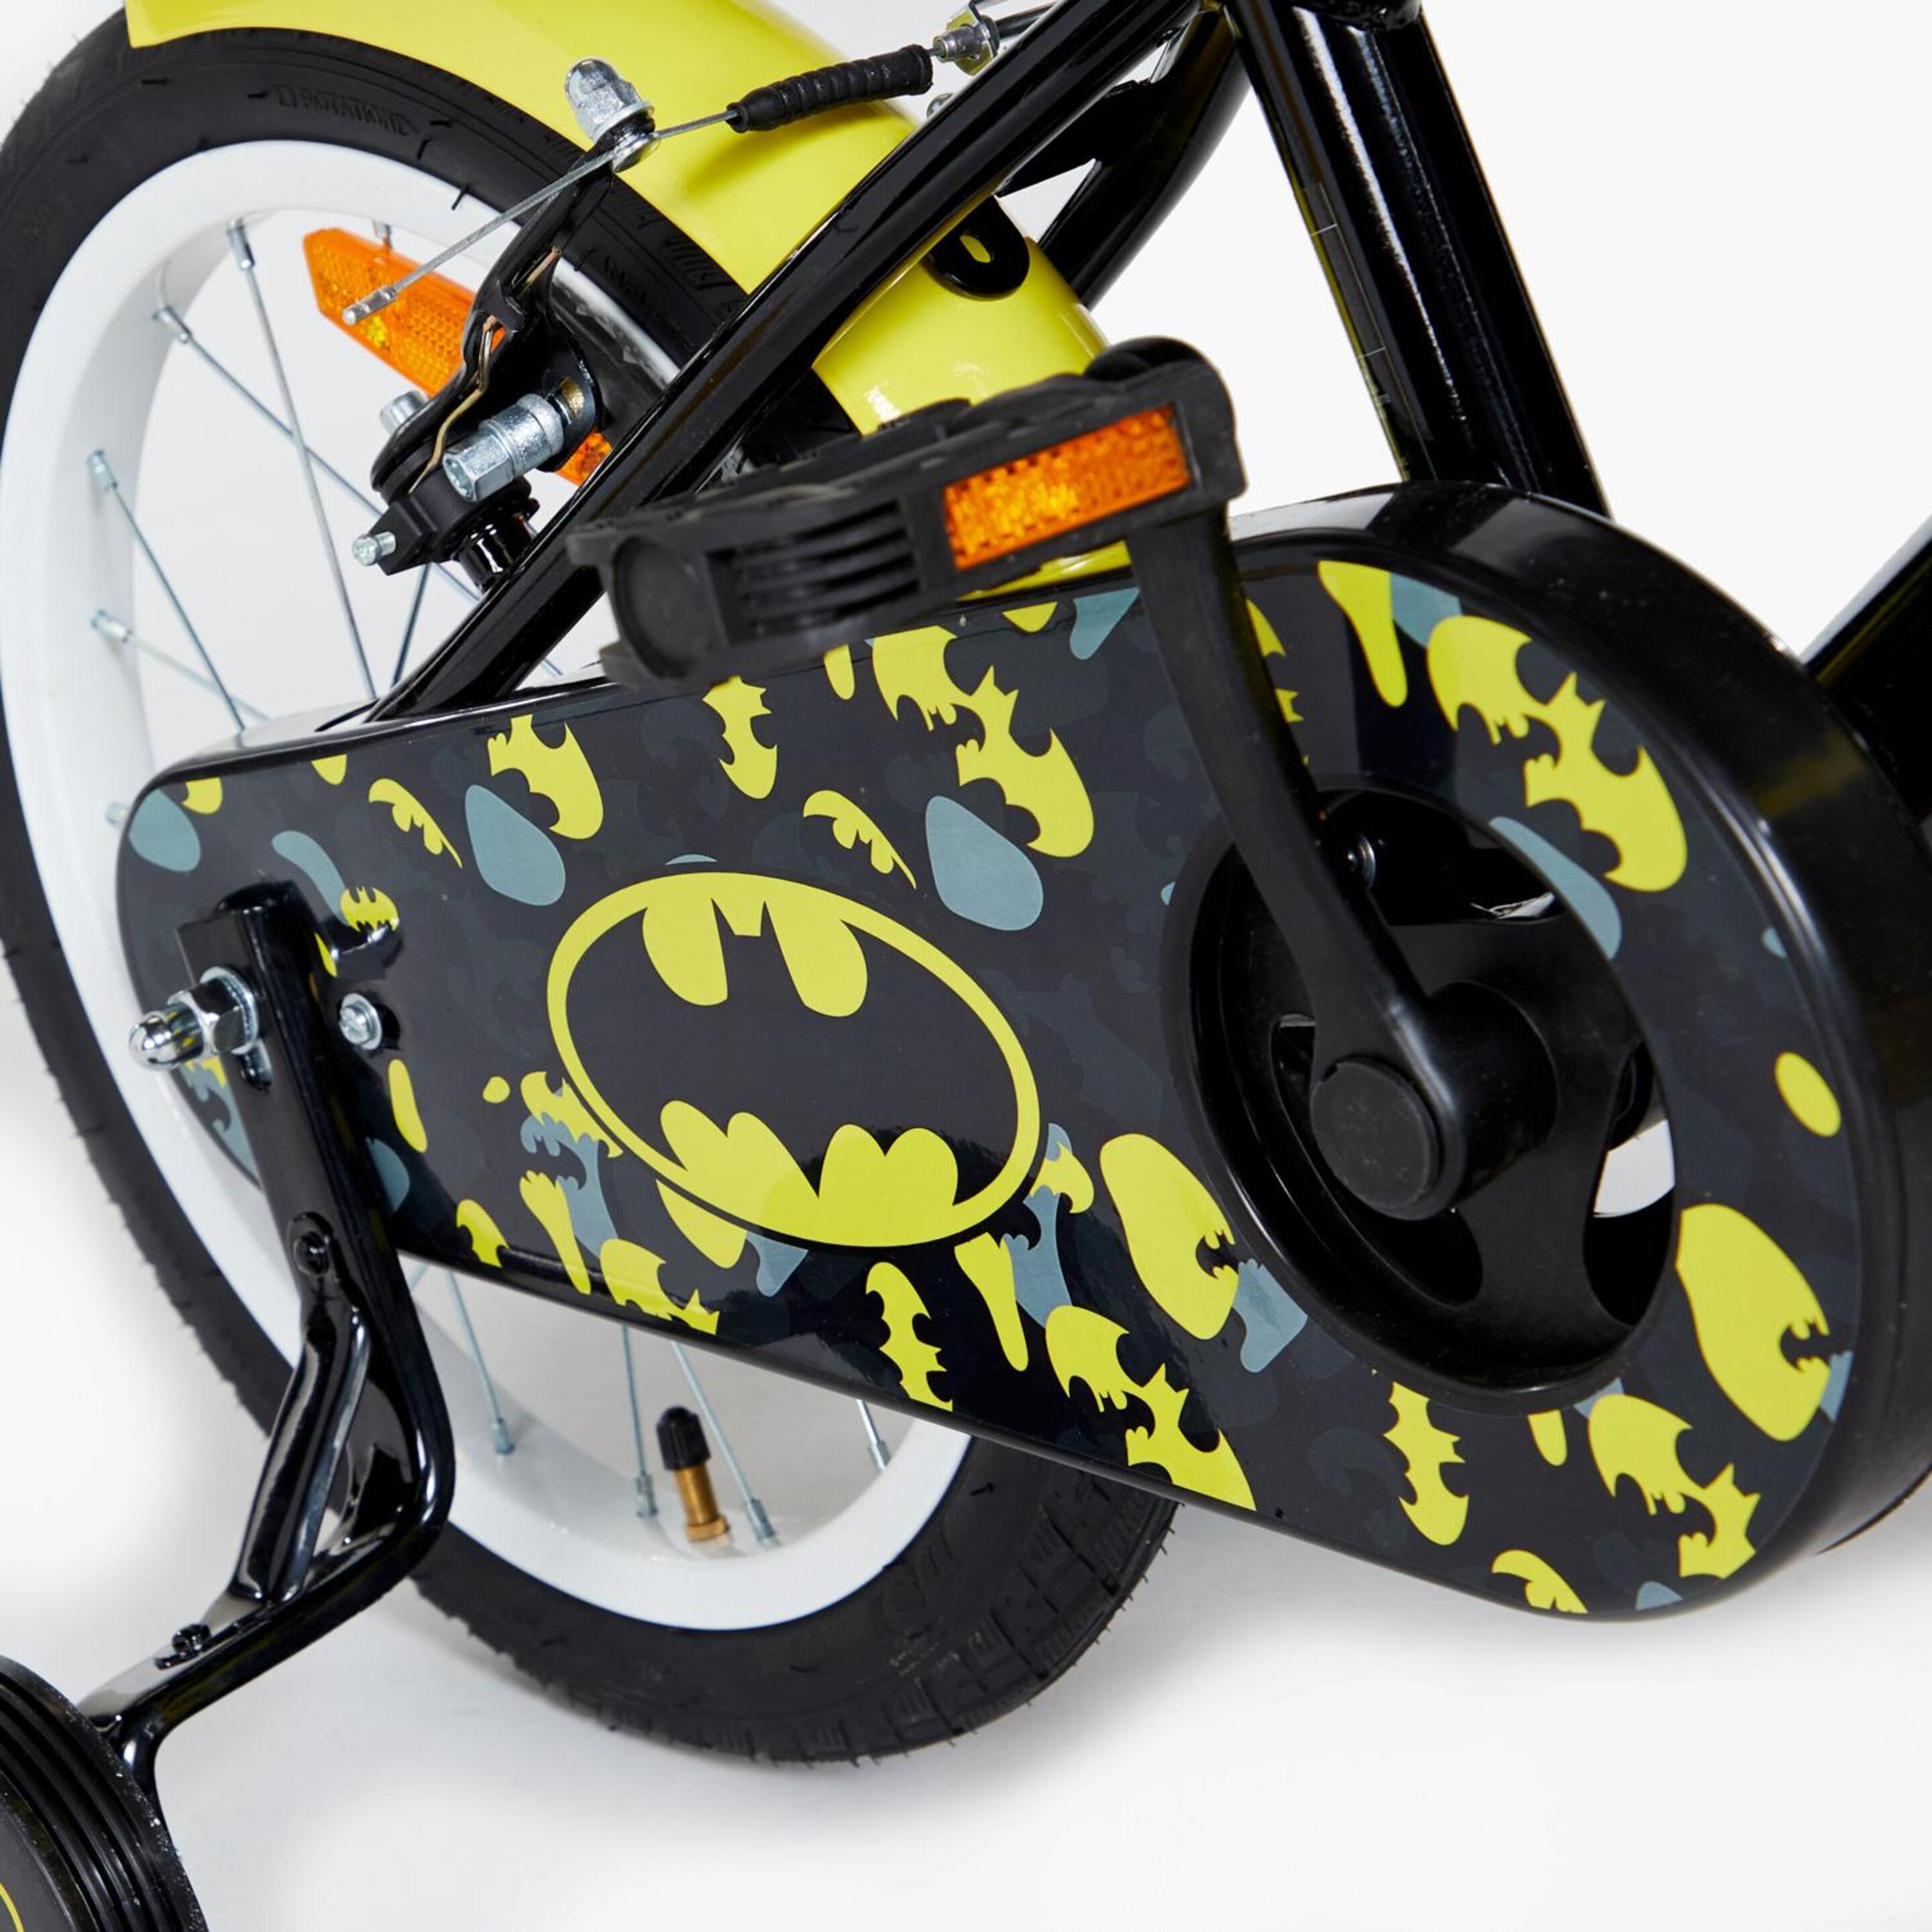 Bicicleta Batman - Negro - Bici Niños DC Comics